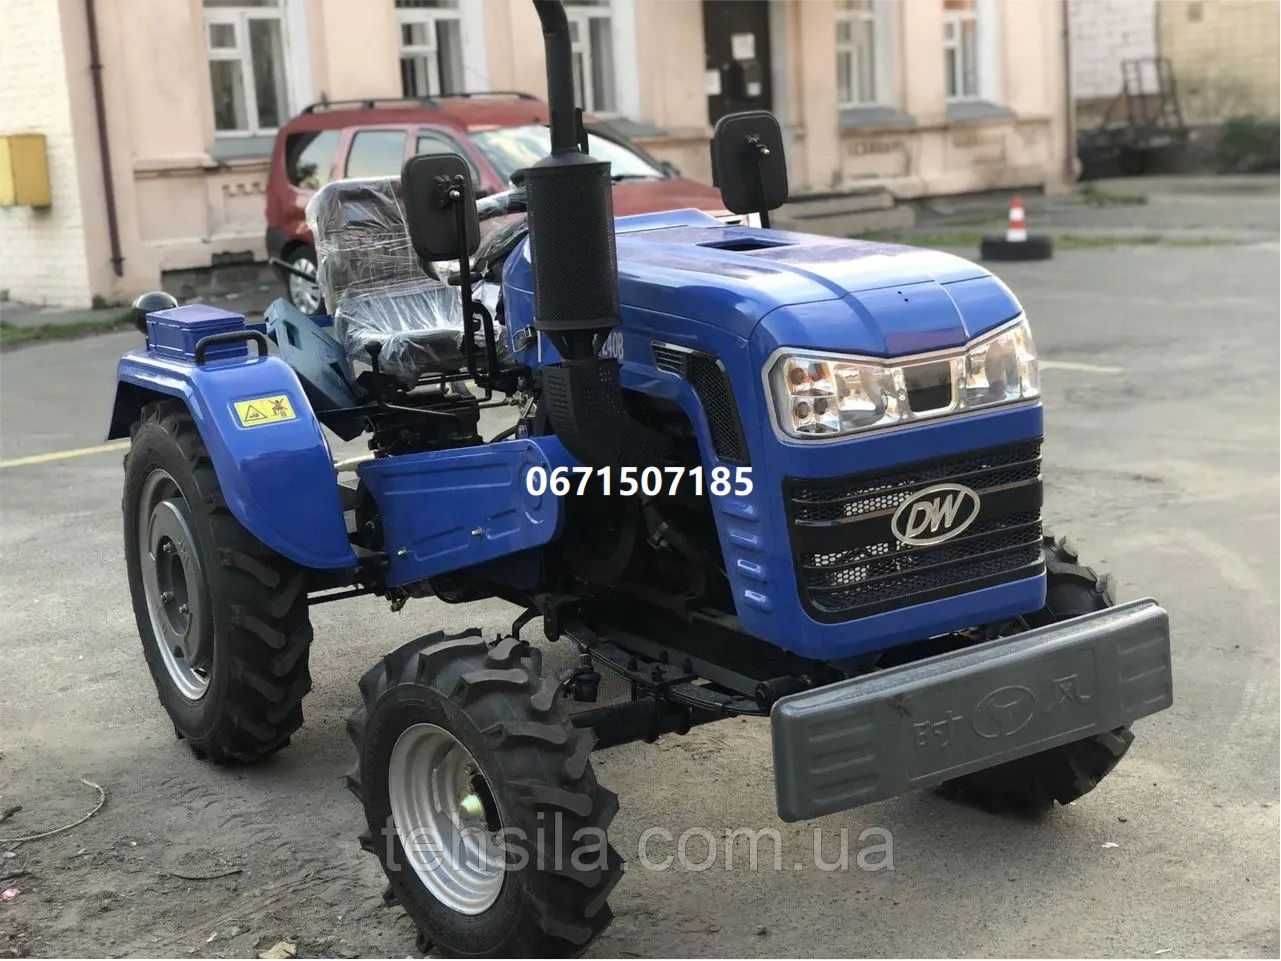 Міні-трактор DW 240 B ГАРНИЙ ВИБІР ДВ Шифенг доставка гарантія